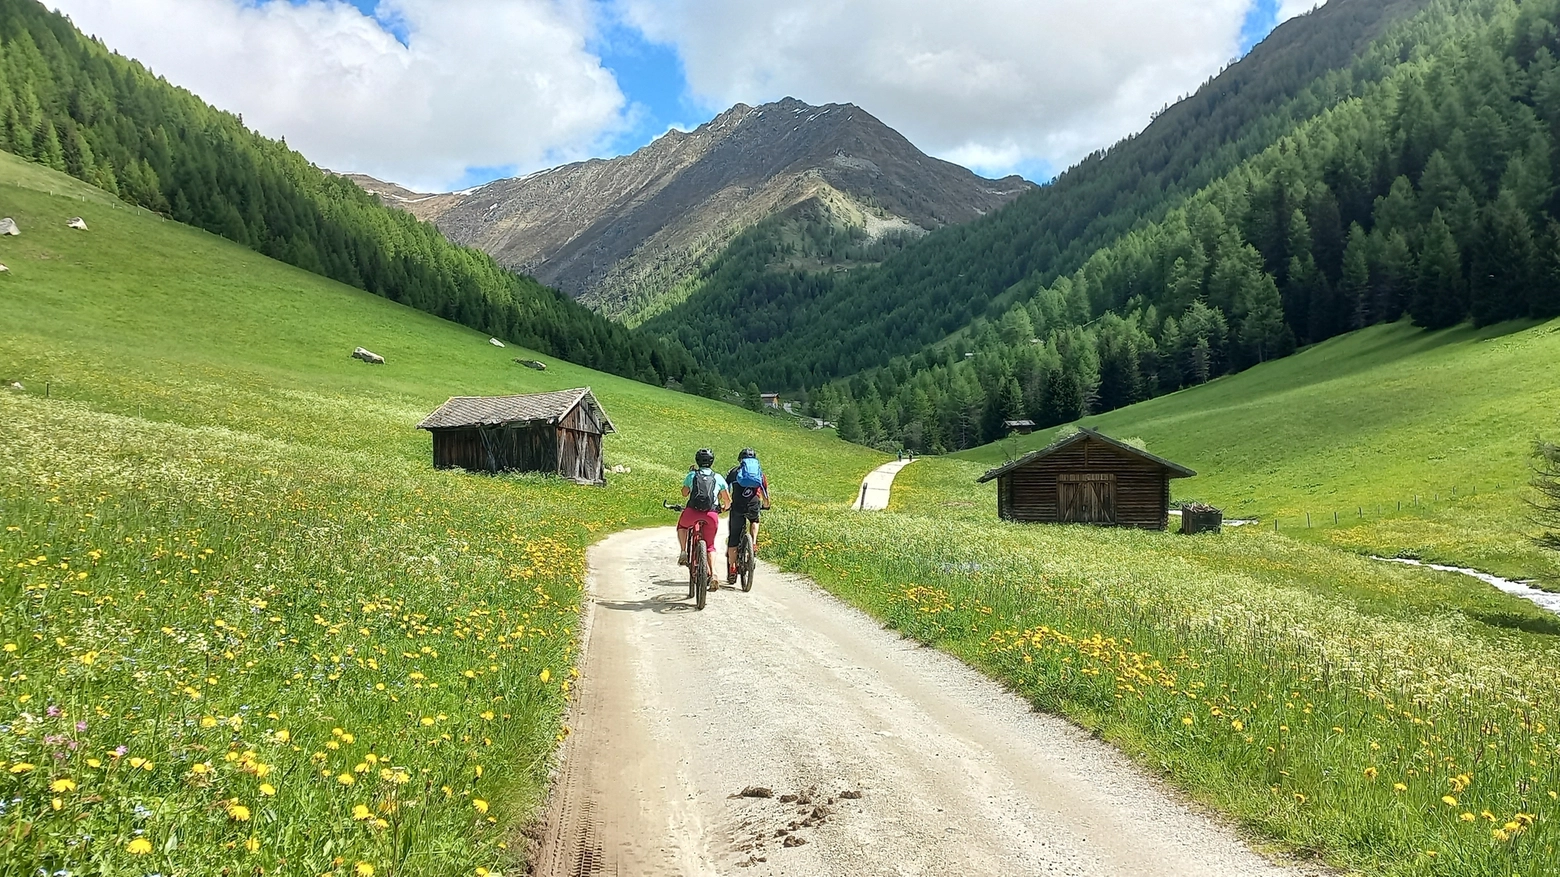 Itinerari nel verde, mete per tutta la famiglia o per escursionisti esperti, fino a raggiungere il ‘villaggio alpino più bello’. Senza dimenticare i piatti tipici e le spa con i loro centri benessere